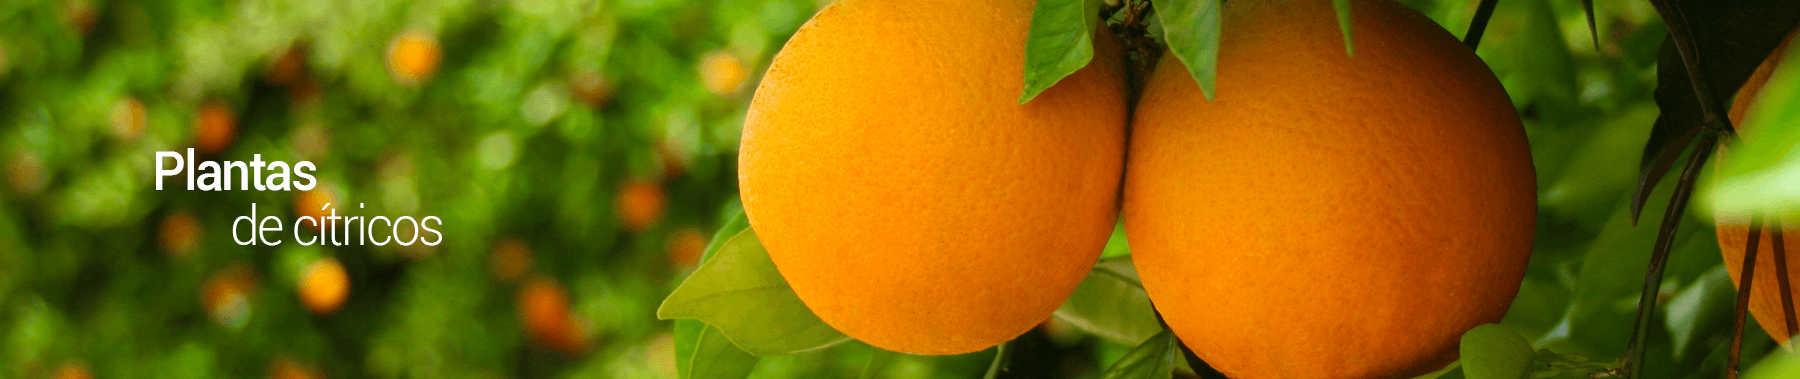 citricos-los-vinedos-PERU-1